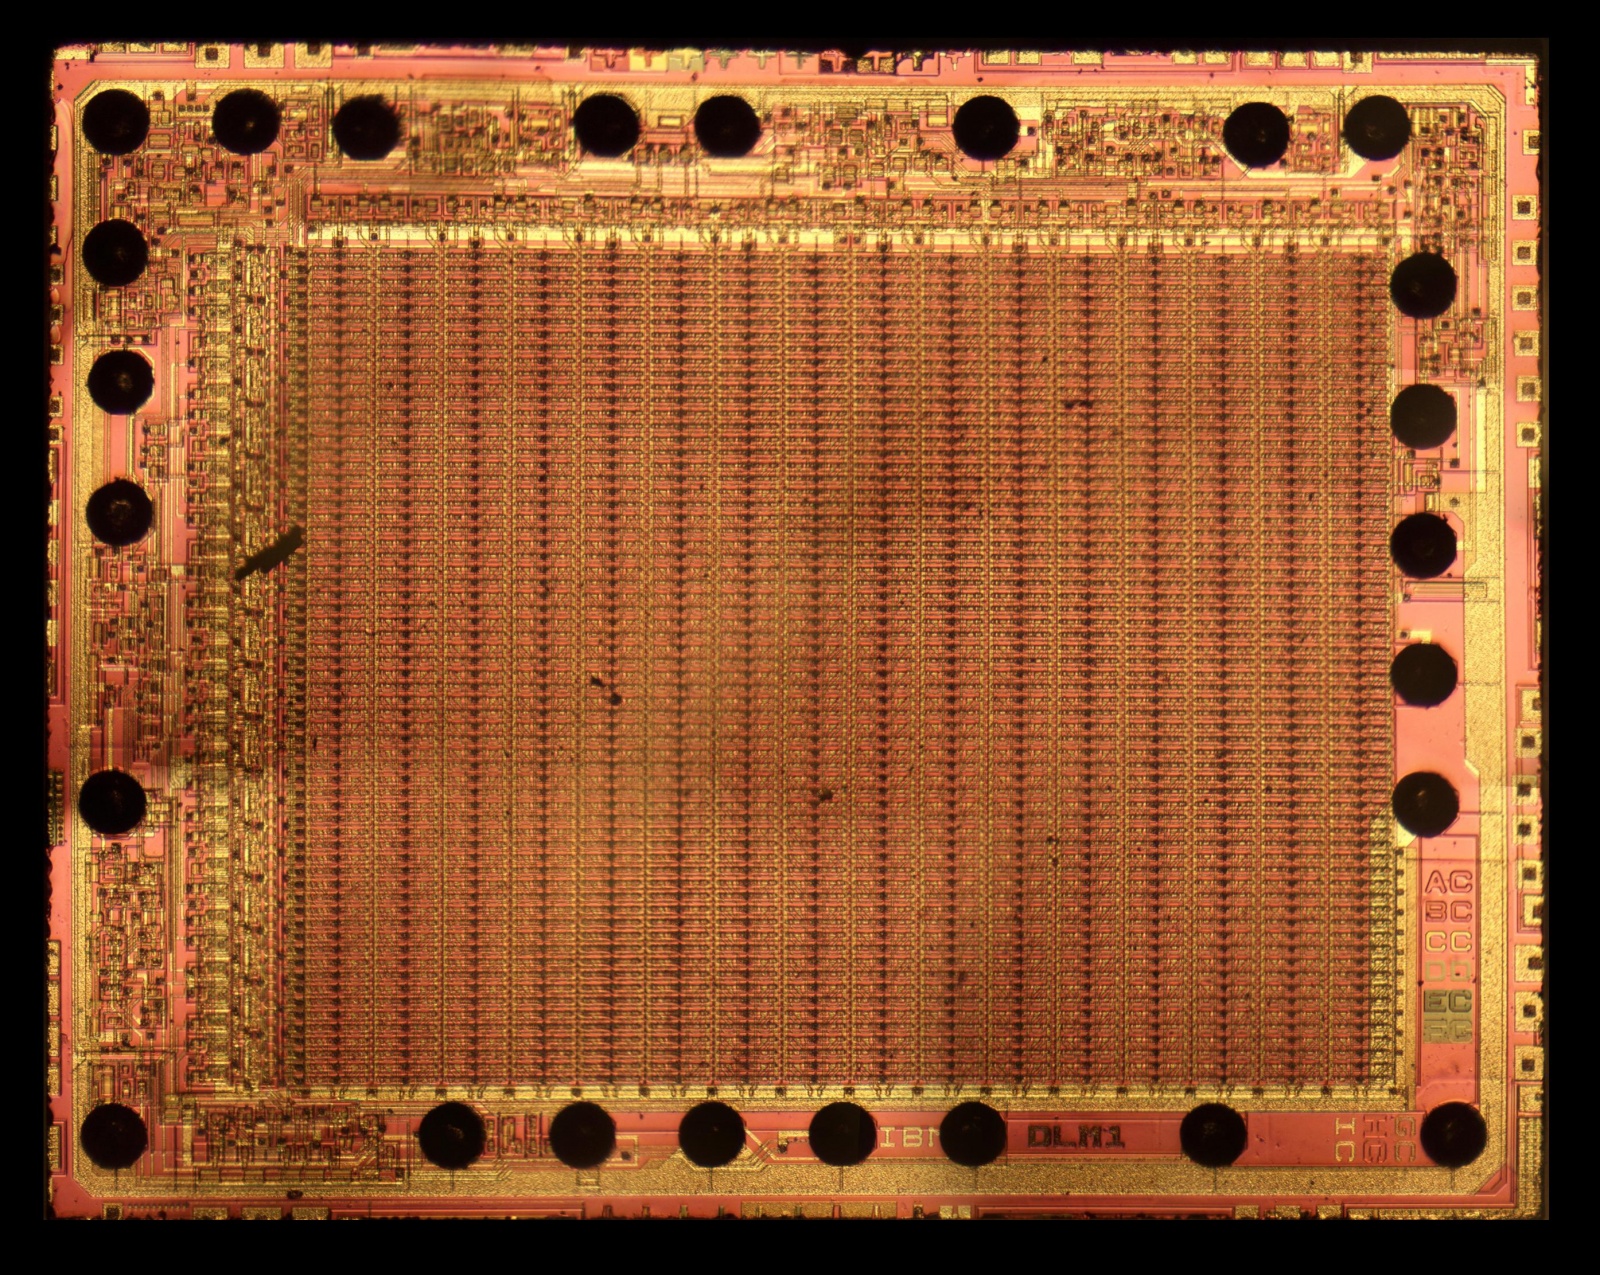 Разбираем пресс-папье от IBM: реверс-инжиниринг чипов памяти из 1970-х - 9